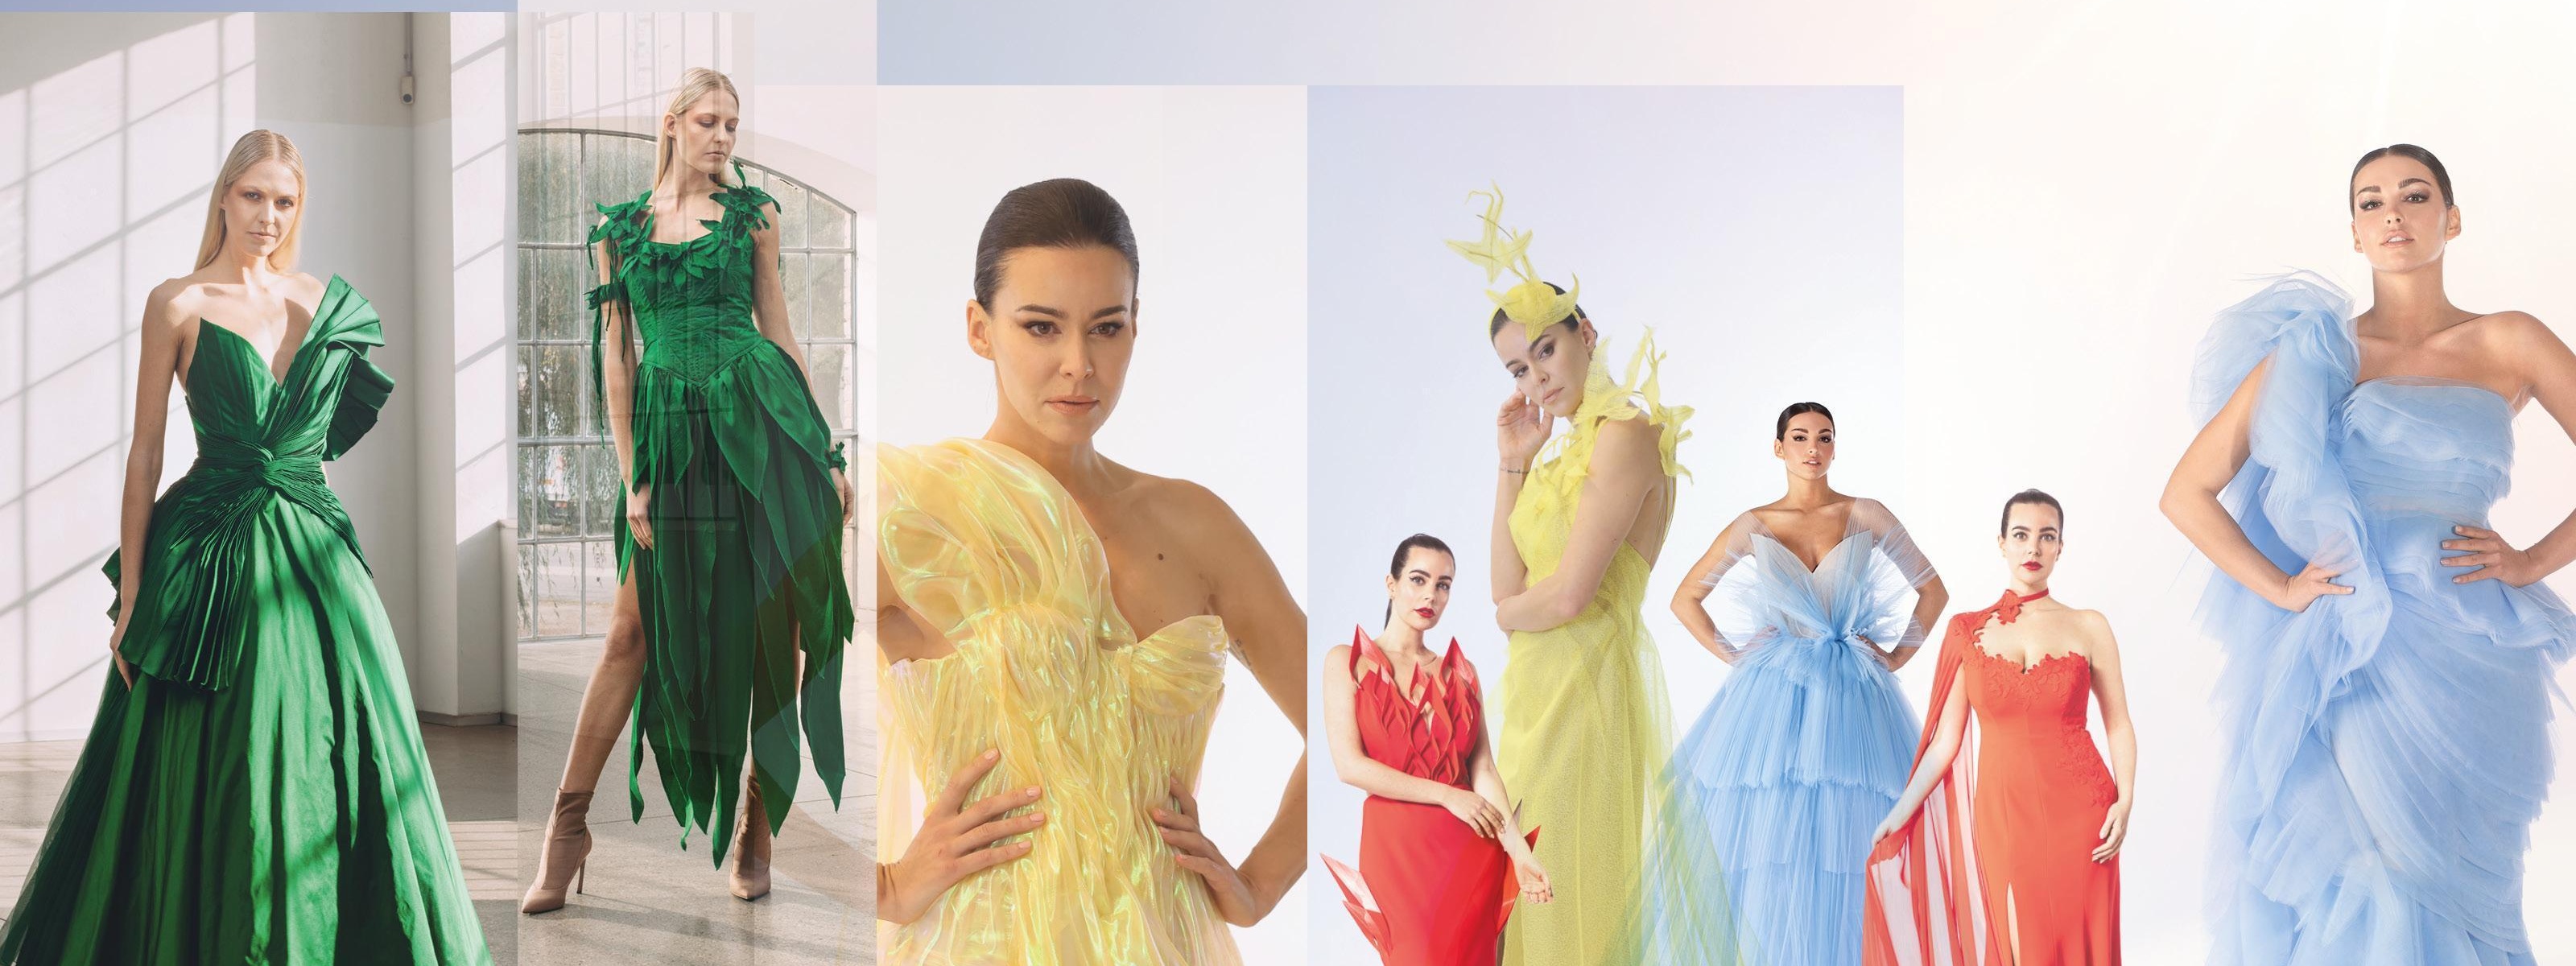 Collage aus mehreren Bildern zum Thema Bekleidungsgewerbe mit unterschiedlichen Haute Couture Kleidern getragen von einem Modell in verschiedenen Farben